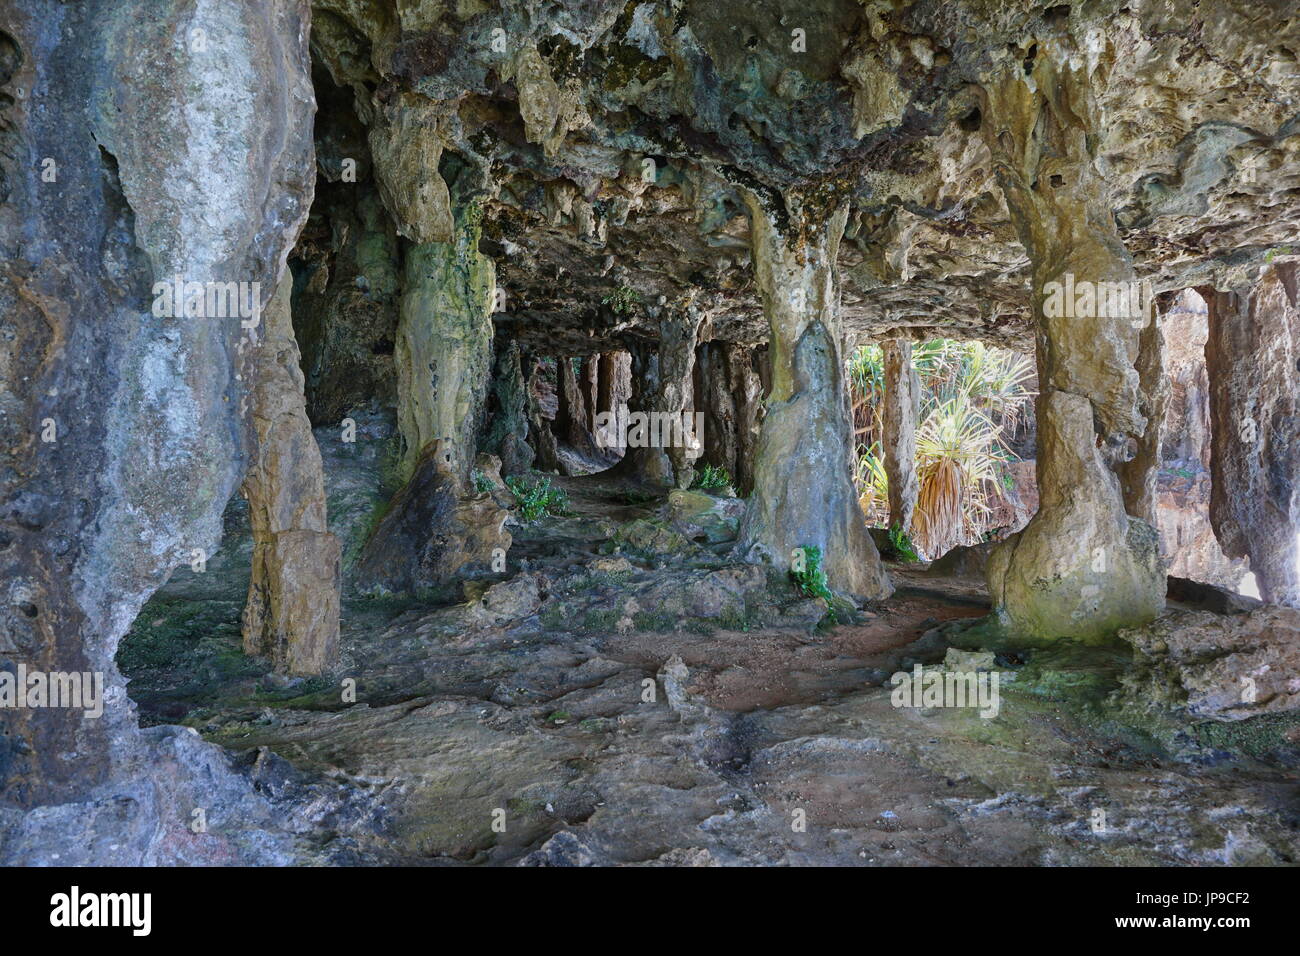 Une caverne de calcaire avec des colonnes sur l'île de Rurutu, archipel du Pacifique Sud, Australes, Polynésie Française, Océanie Banque D'Images